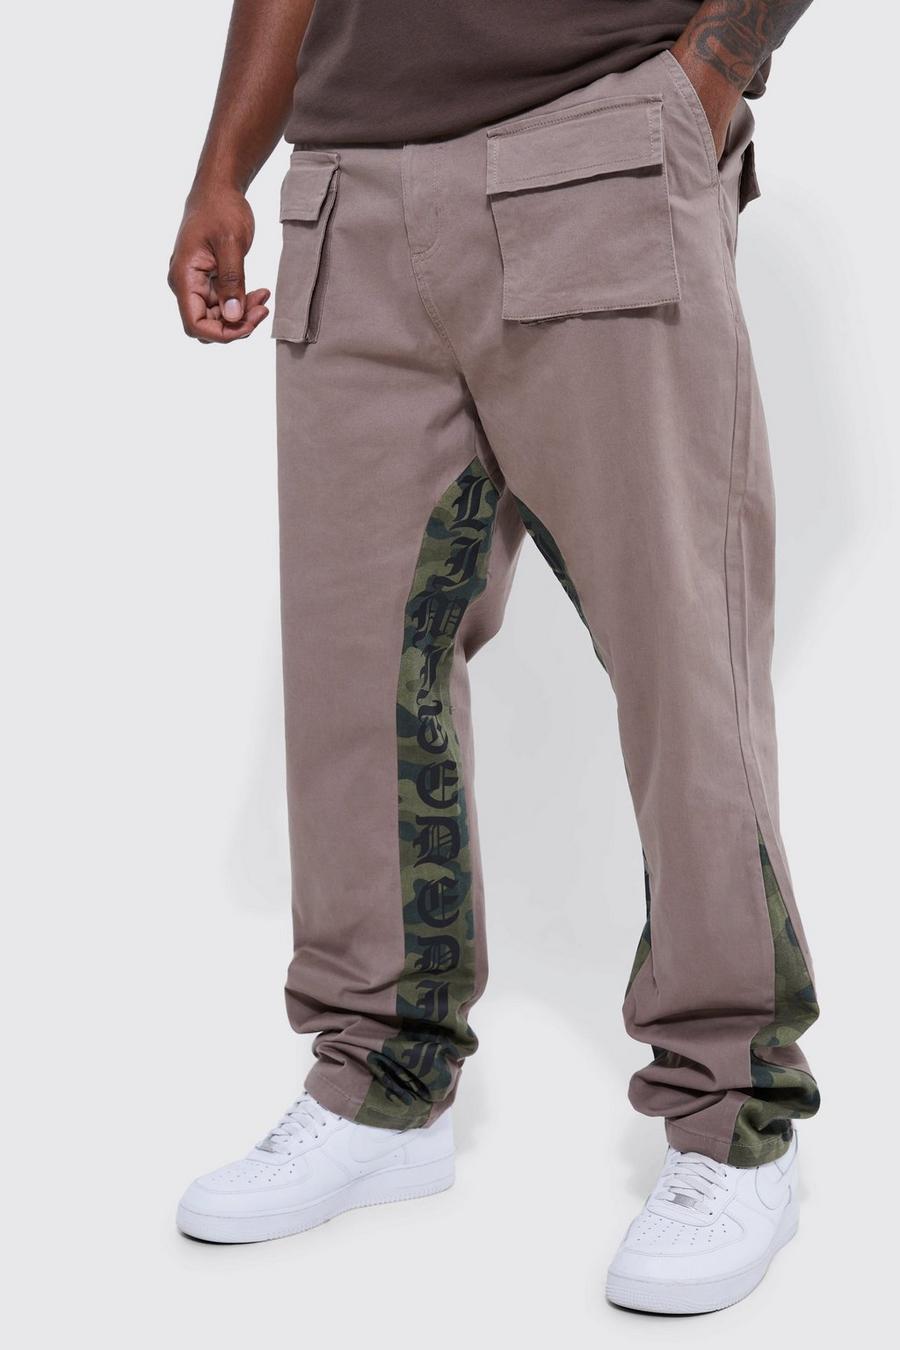 Pantaloni Cargo Plus Size fissi Skinny Fit in fantasia militare con inserti, Chocolate marrón